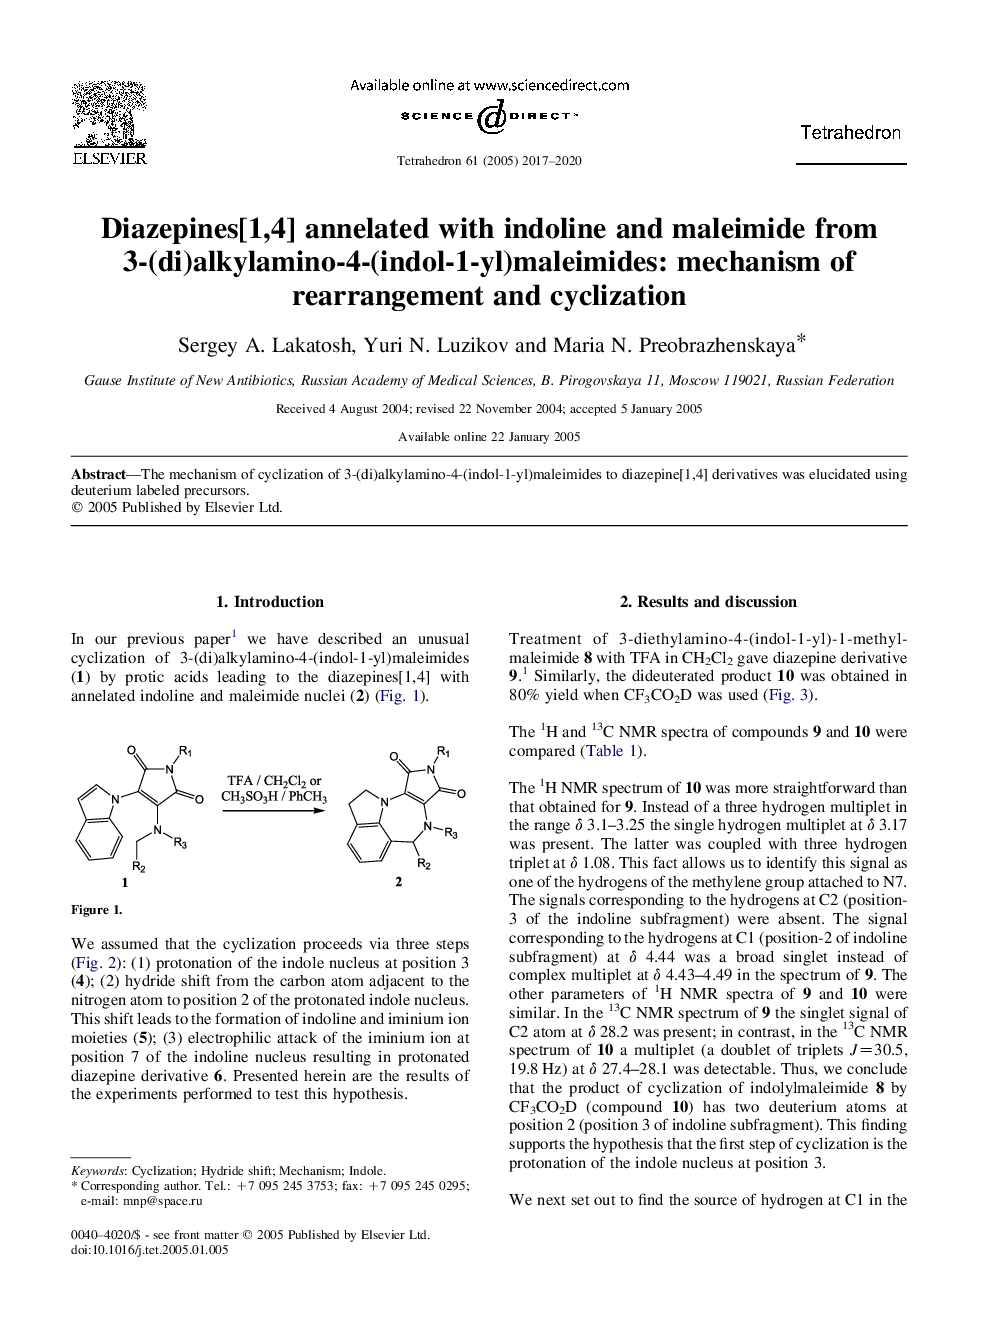 دیازپین ها [1،4] با اندولین و مالیمید از 3 (دی) آلکیل آمینو -4- (اندول-1-ییل) ماریامینید: مکانیسم بازسازی و سیکلیس شدن 